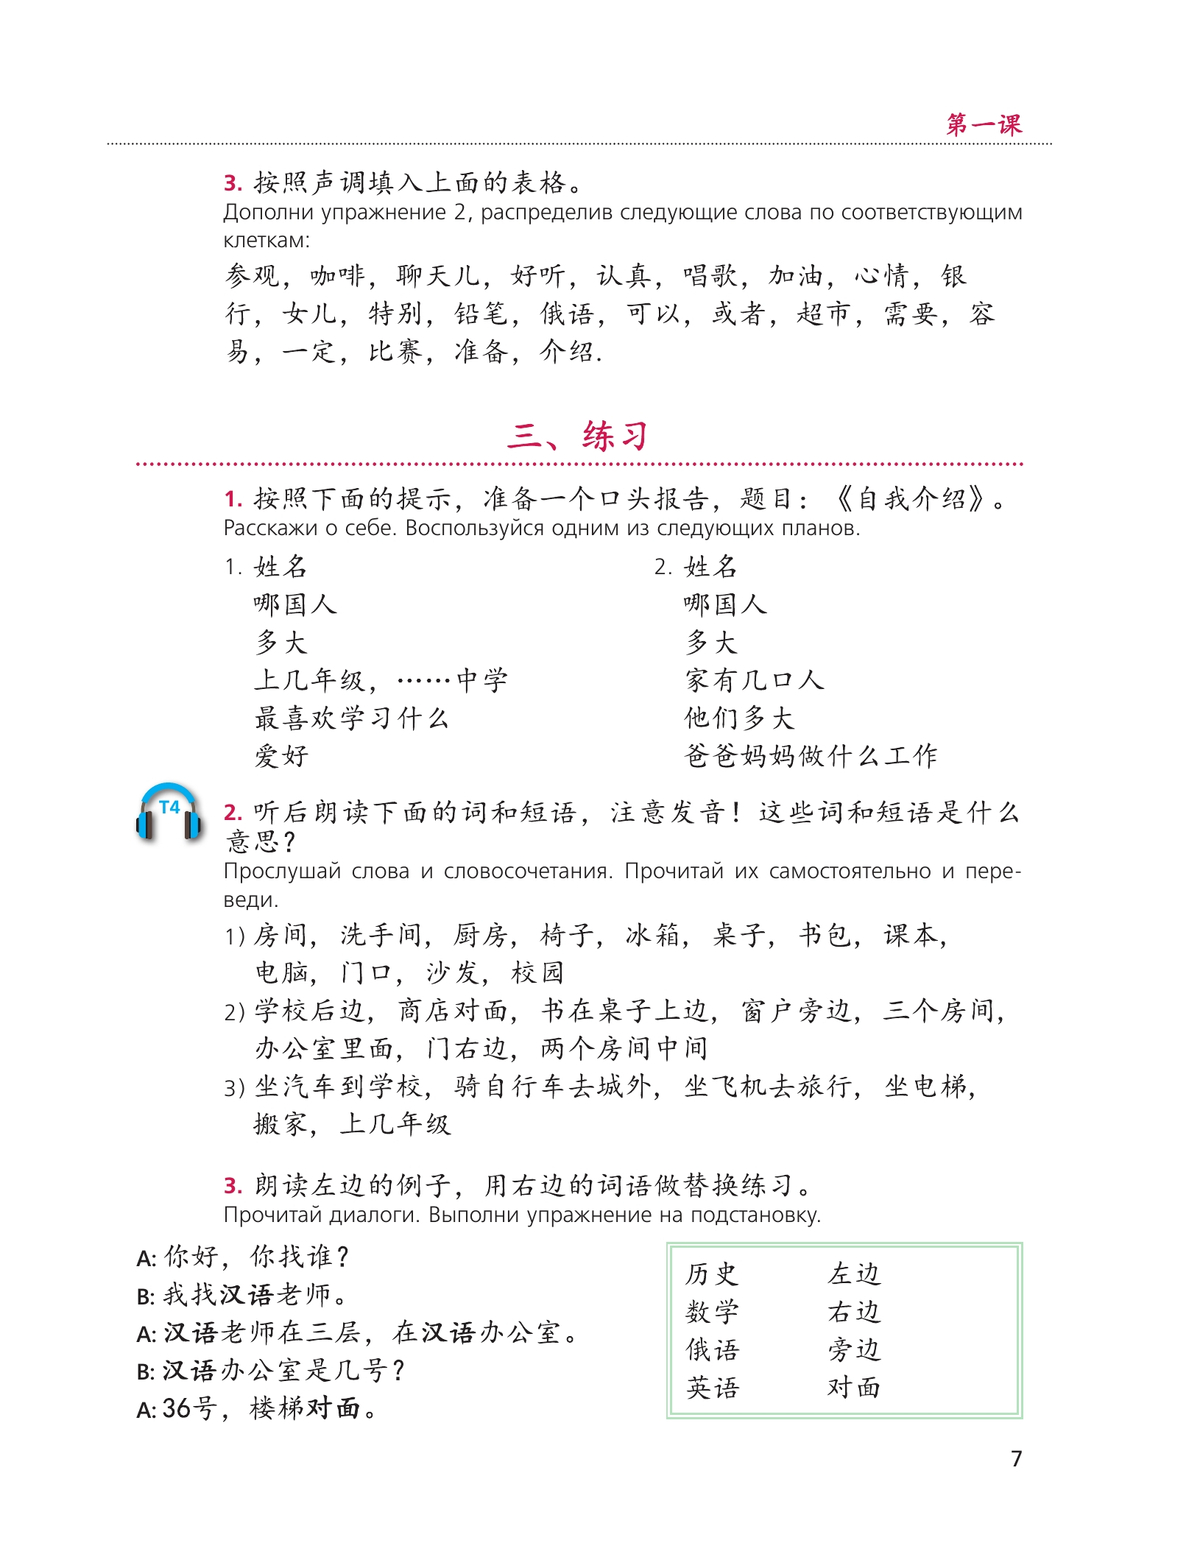 Китайский язык. Второй иностранный язык. 8 класс. Учебник 4